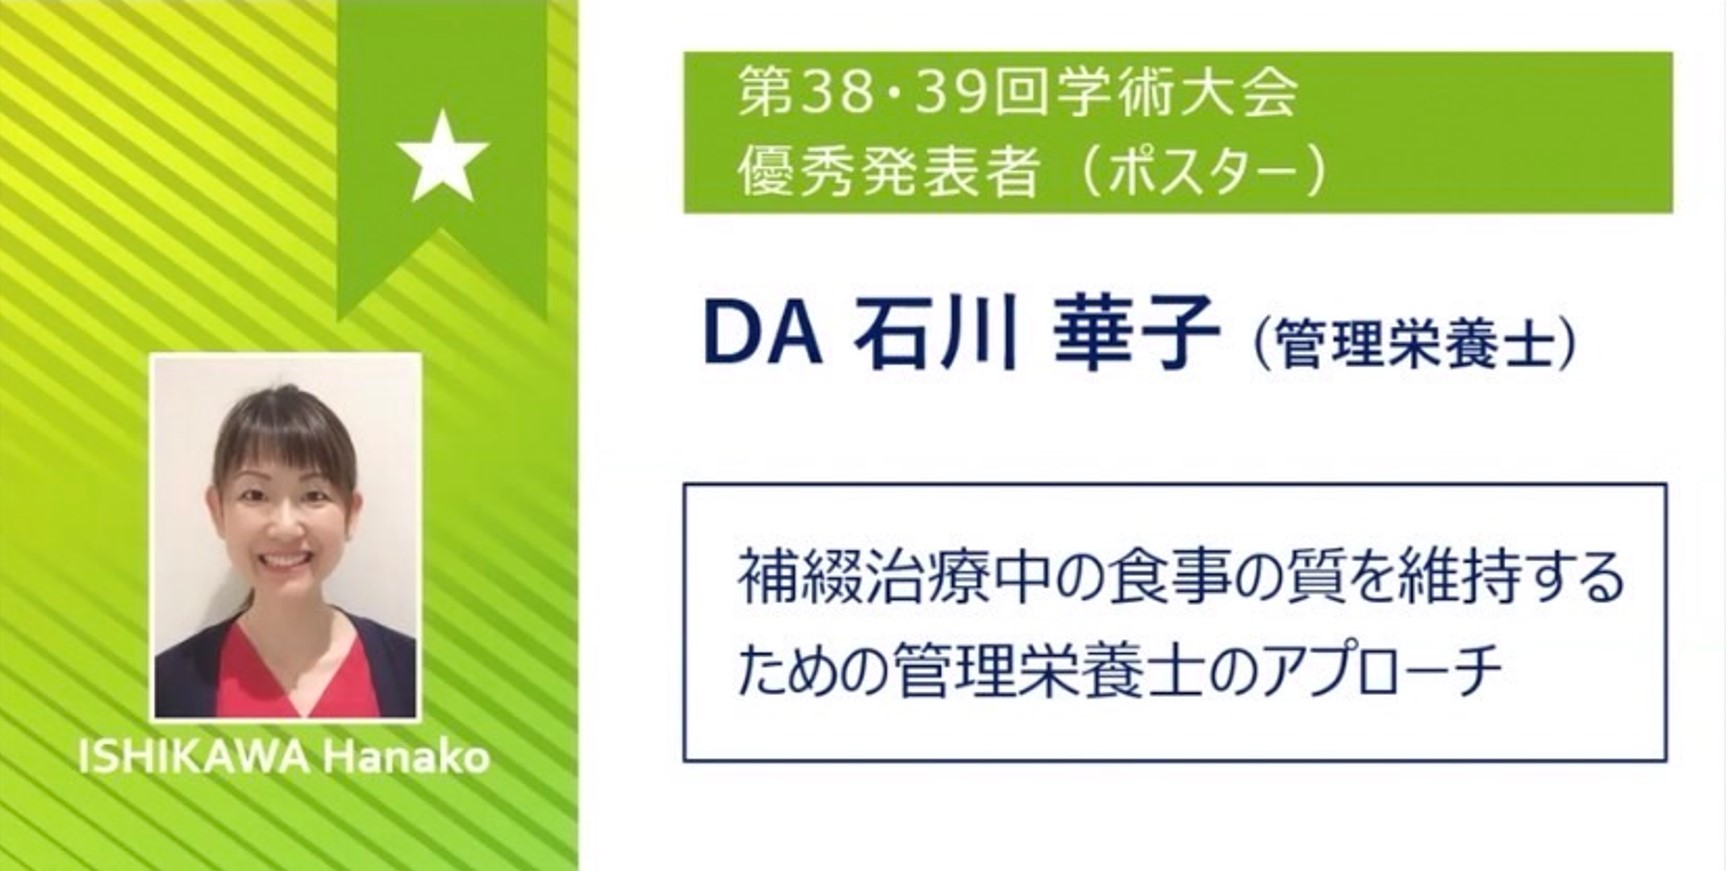 日本最大級の臨床系学会で、当院管理栄養士石川が優秀発表者（ポスター）に選ばれました